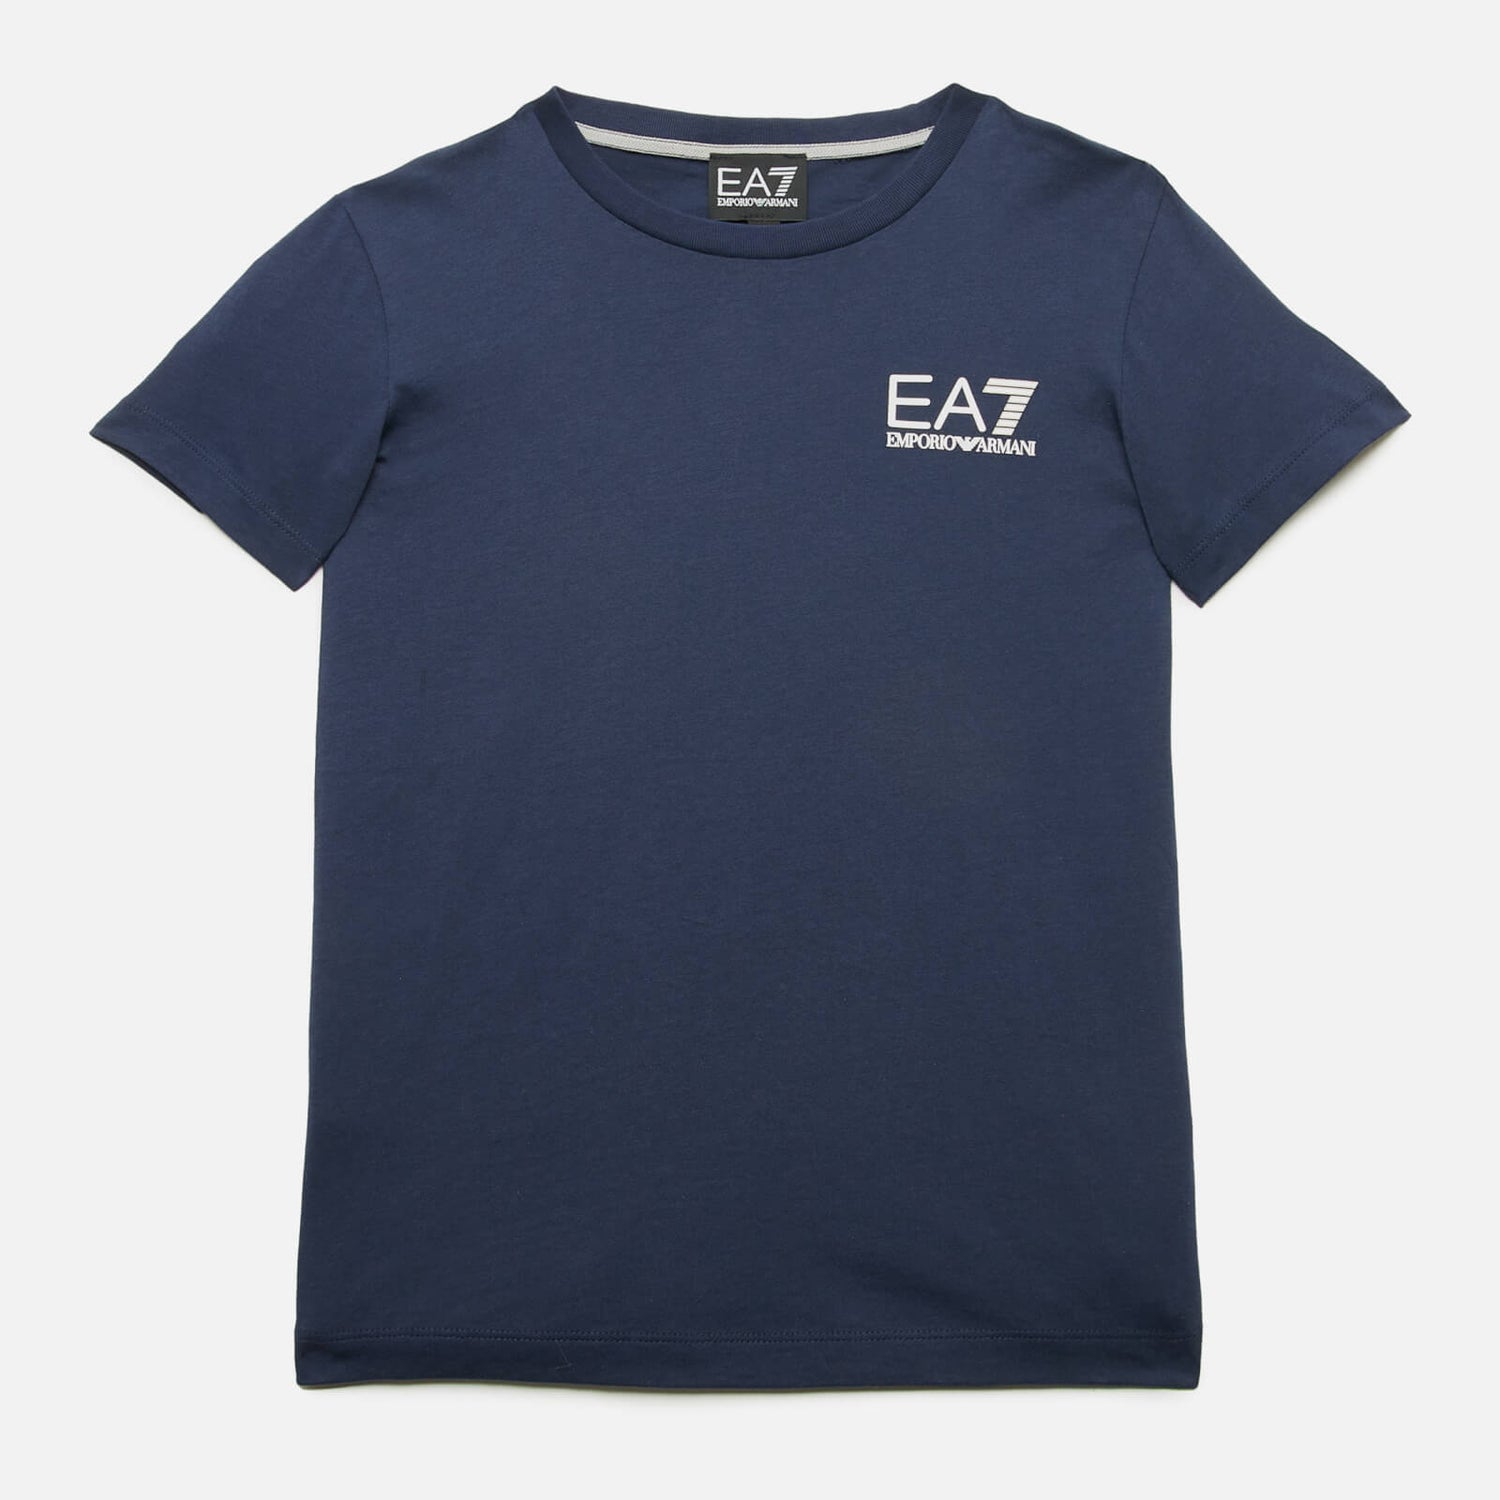 EA7 Boys' Core Identity T-Shirt - Navy - 4 Years